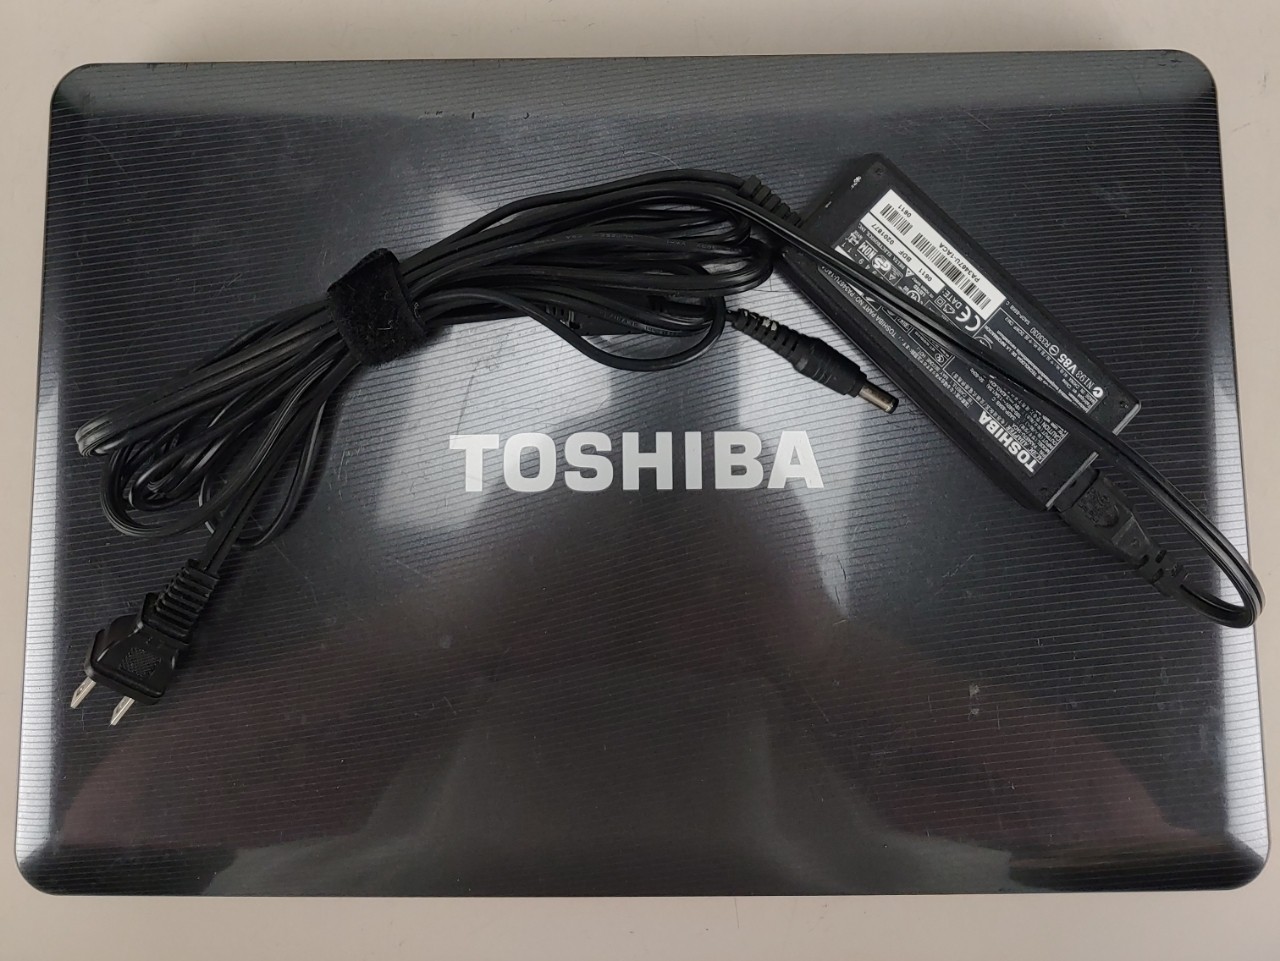 Toshiba Satellite L505D-S5965 15.6" 3 Gb Ram 250 Gb HDD